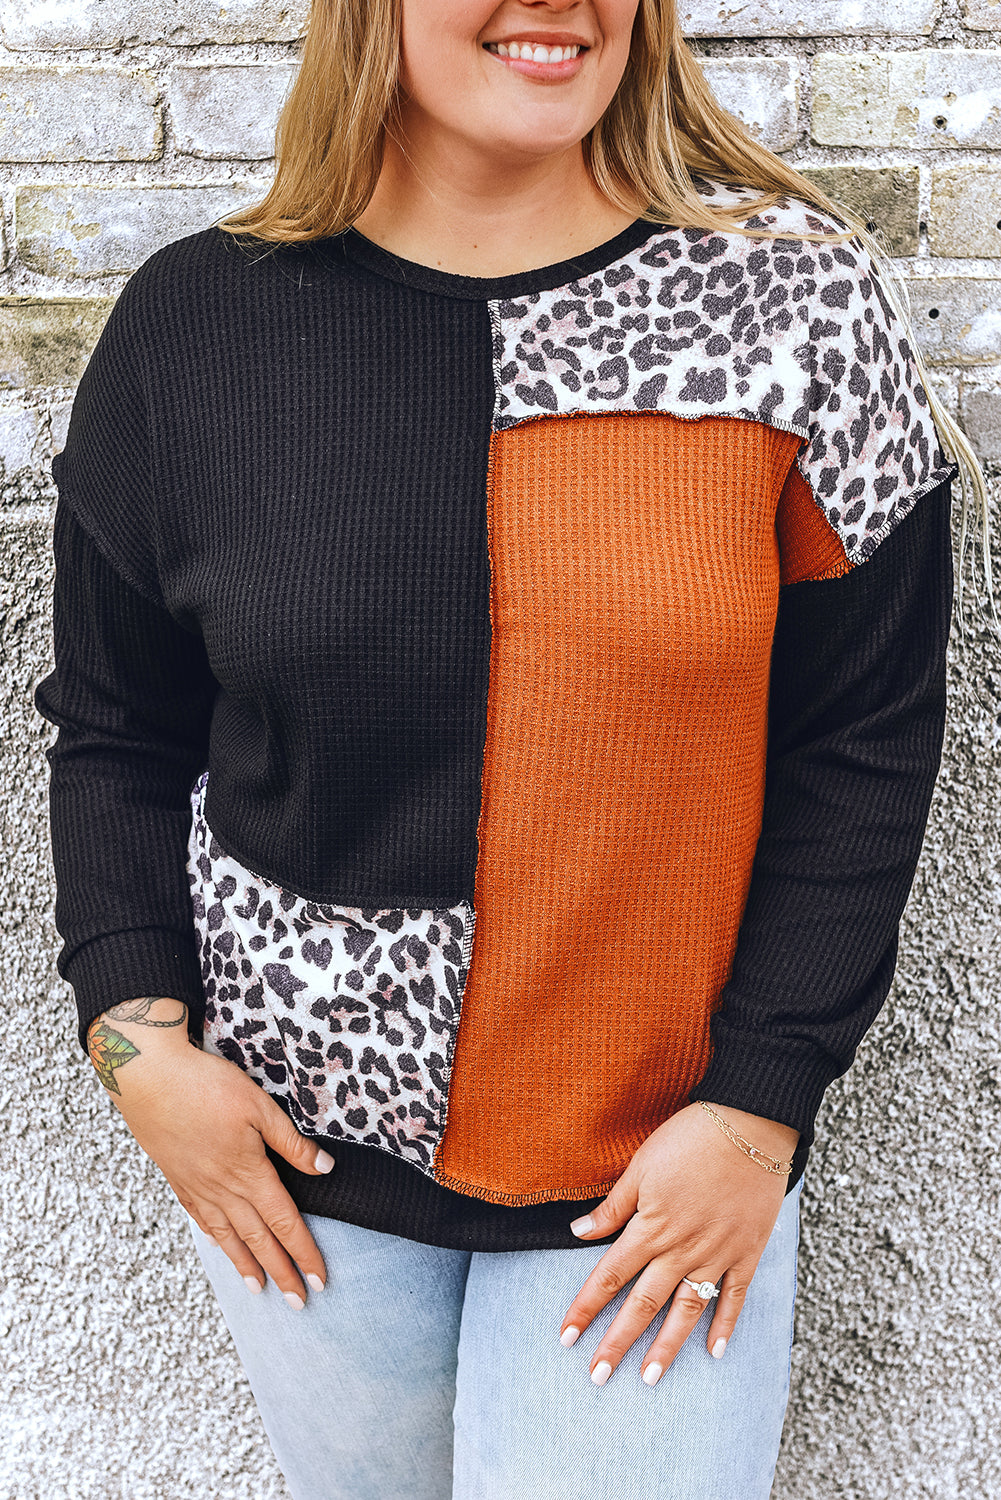 Crno-narančasta majica veće veličine s leopard patchwork pletenim tkanjem u boji